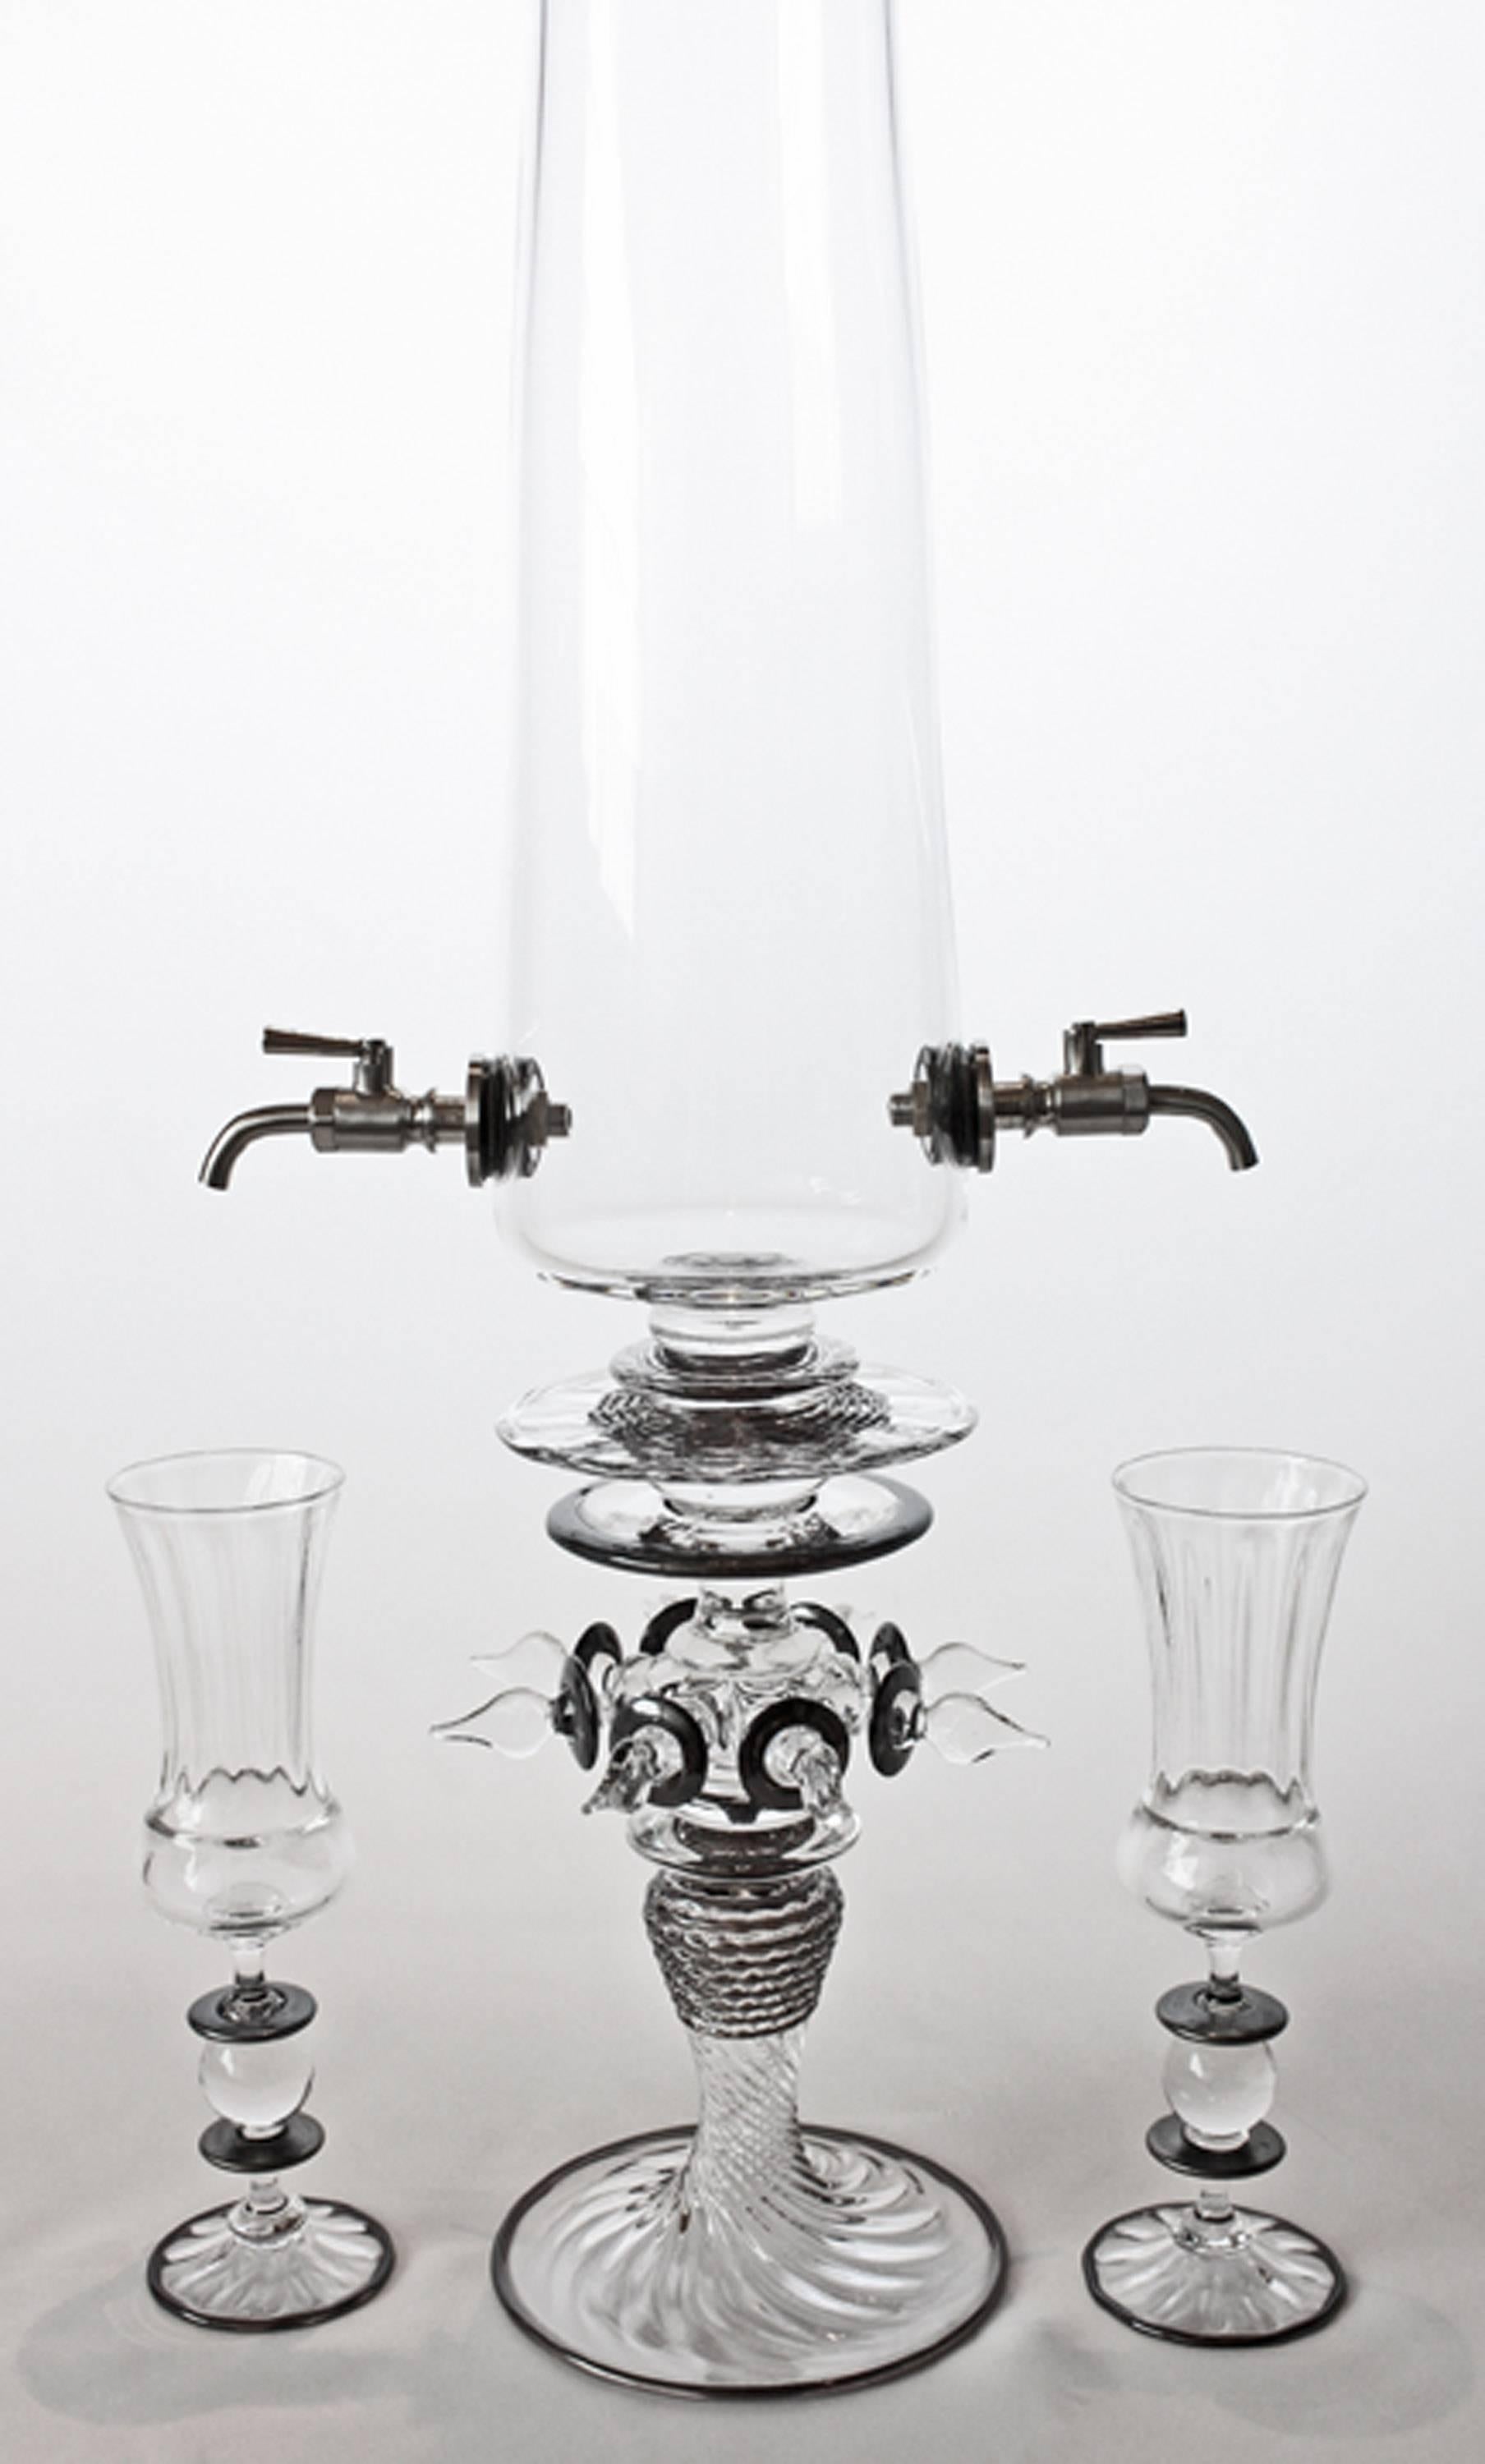 absinthe fountain set